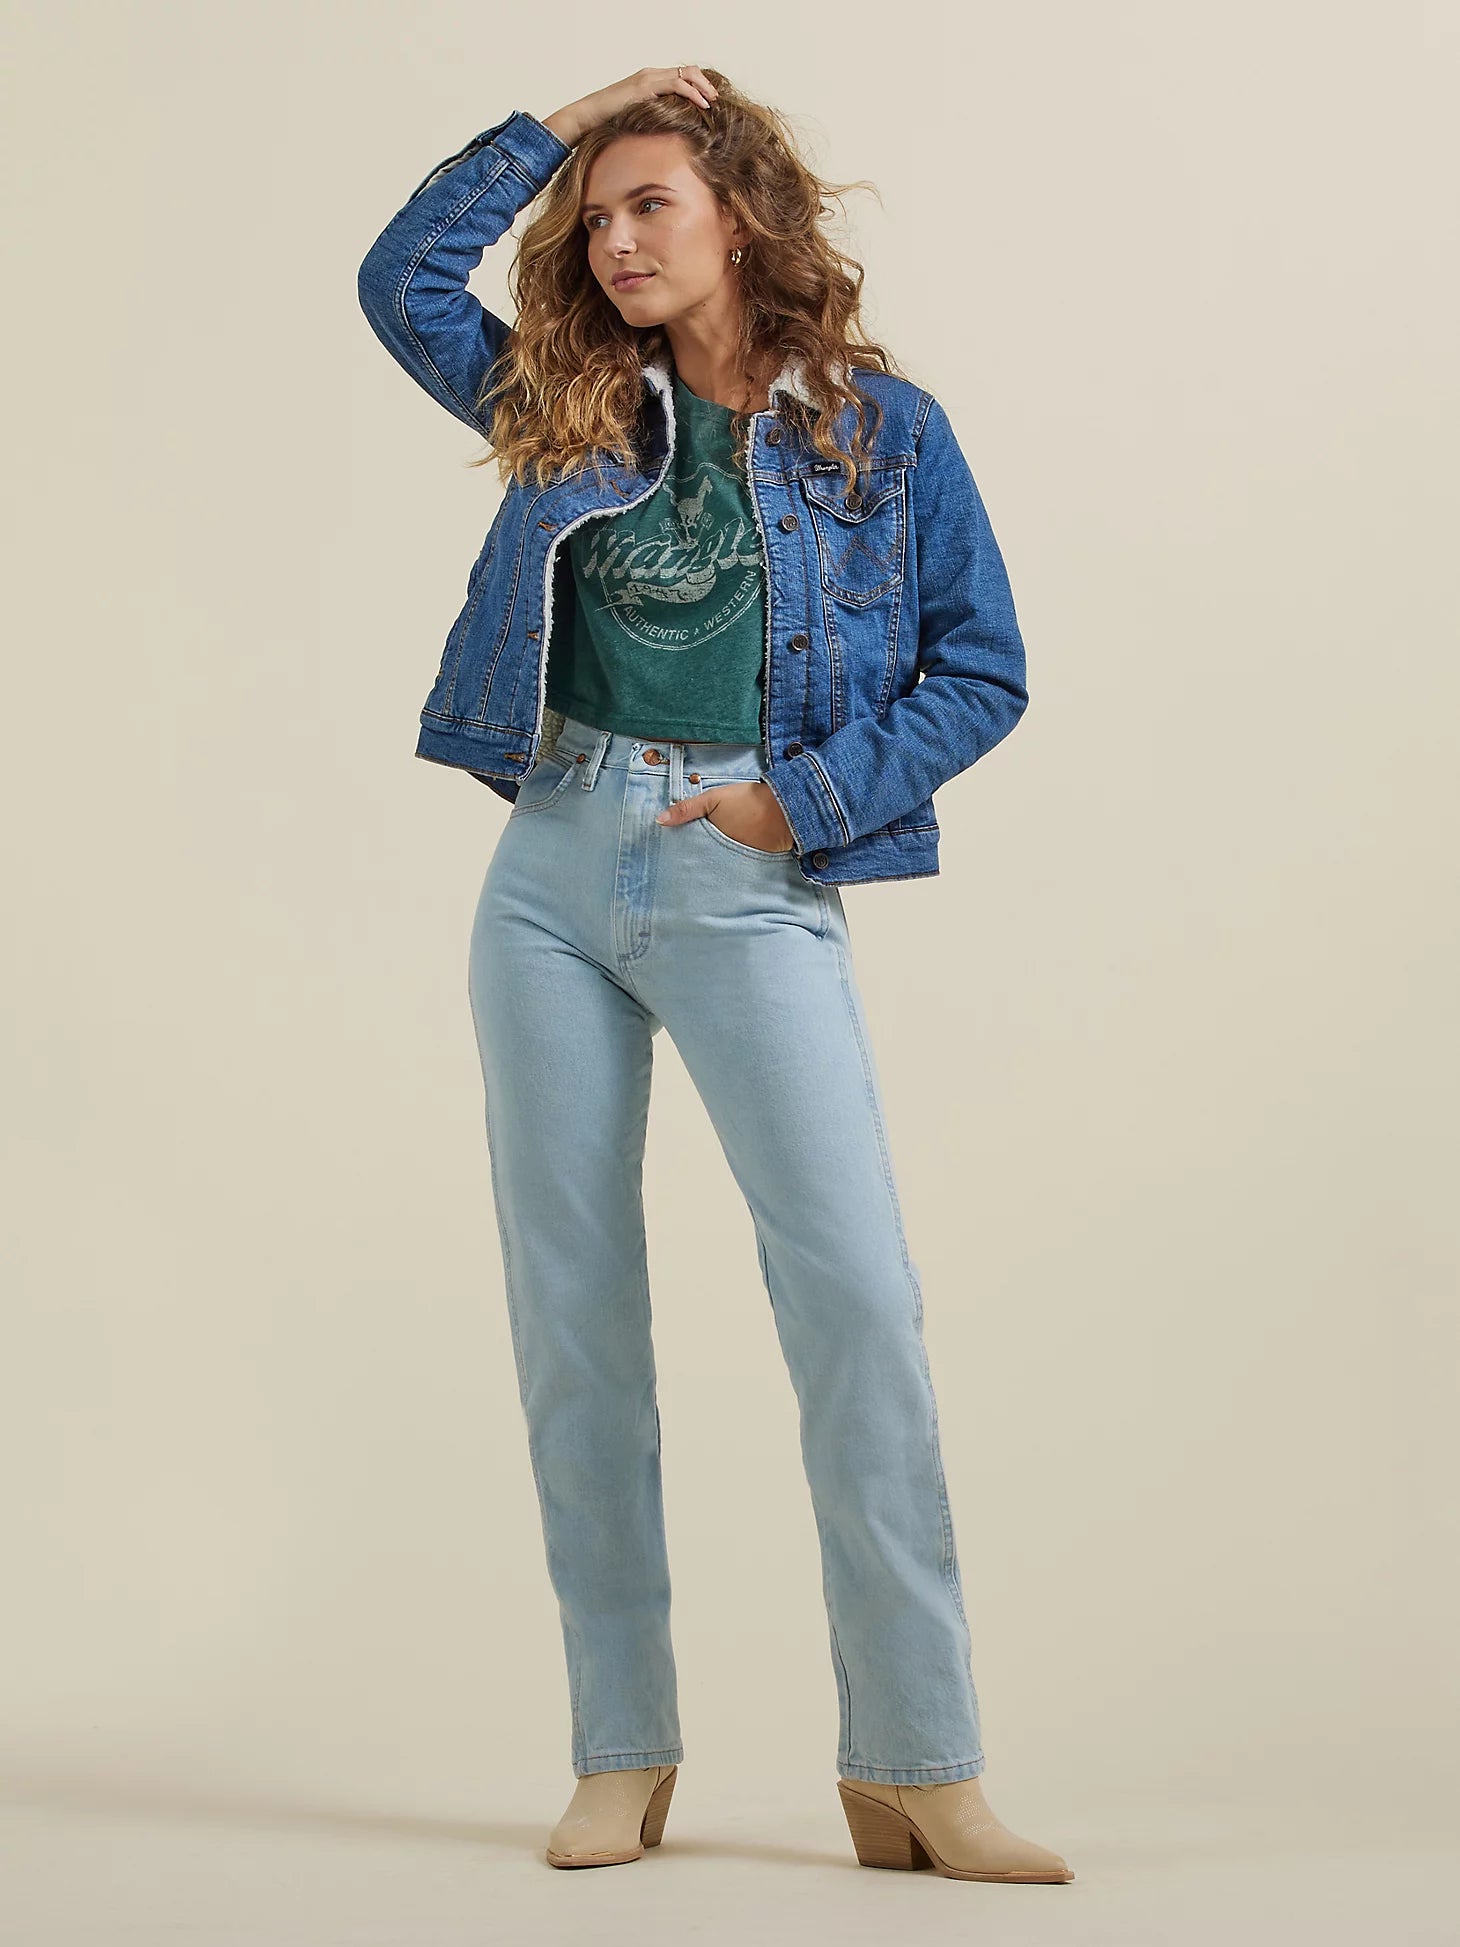 Wrangler Women's Cowboy Cut Slim Fit Jeans